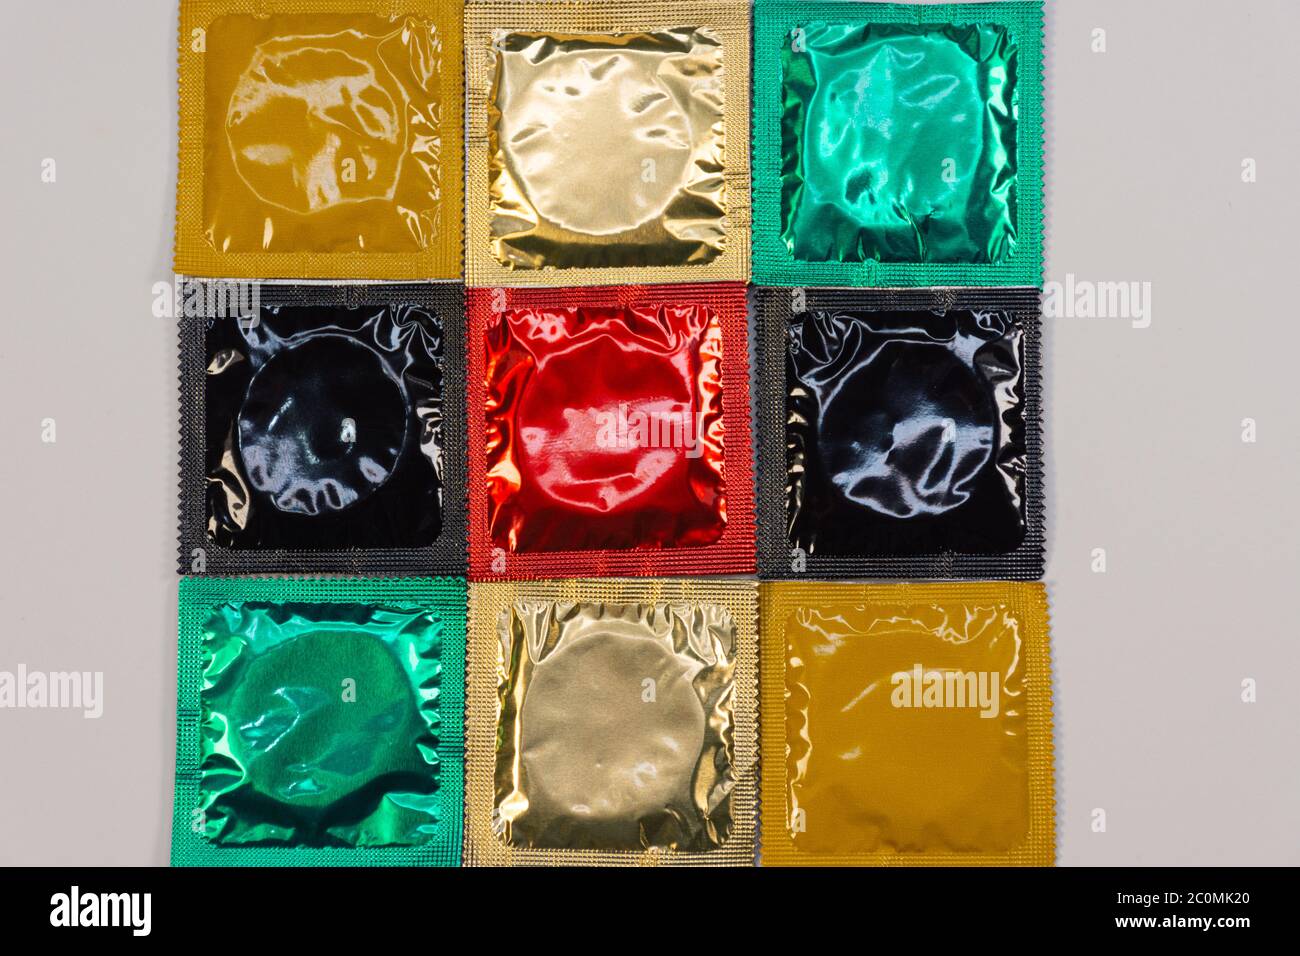 Verkaufen benutzte kondome Vietnam: Im